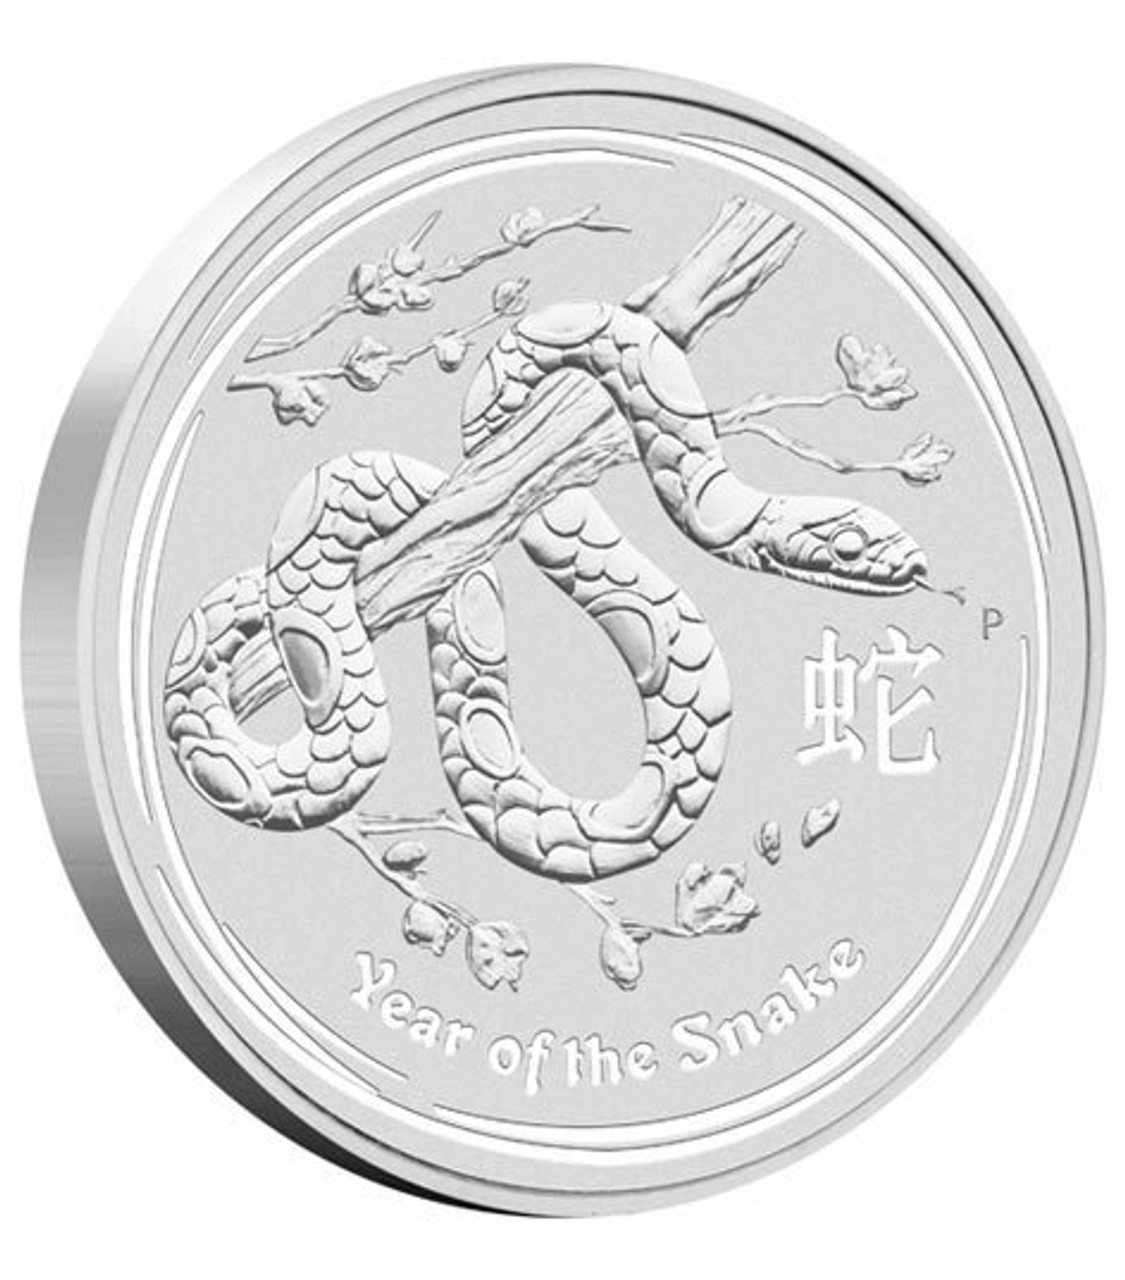 zal ik doen Kloppen gastheer Australia 2013 Year of the Snake 10 Kilos Silver Coin